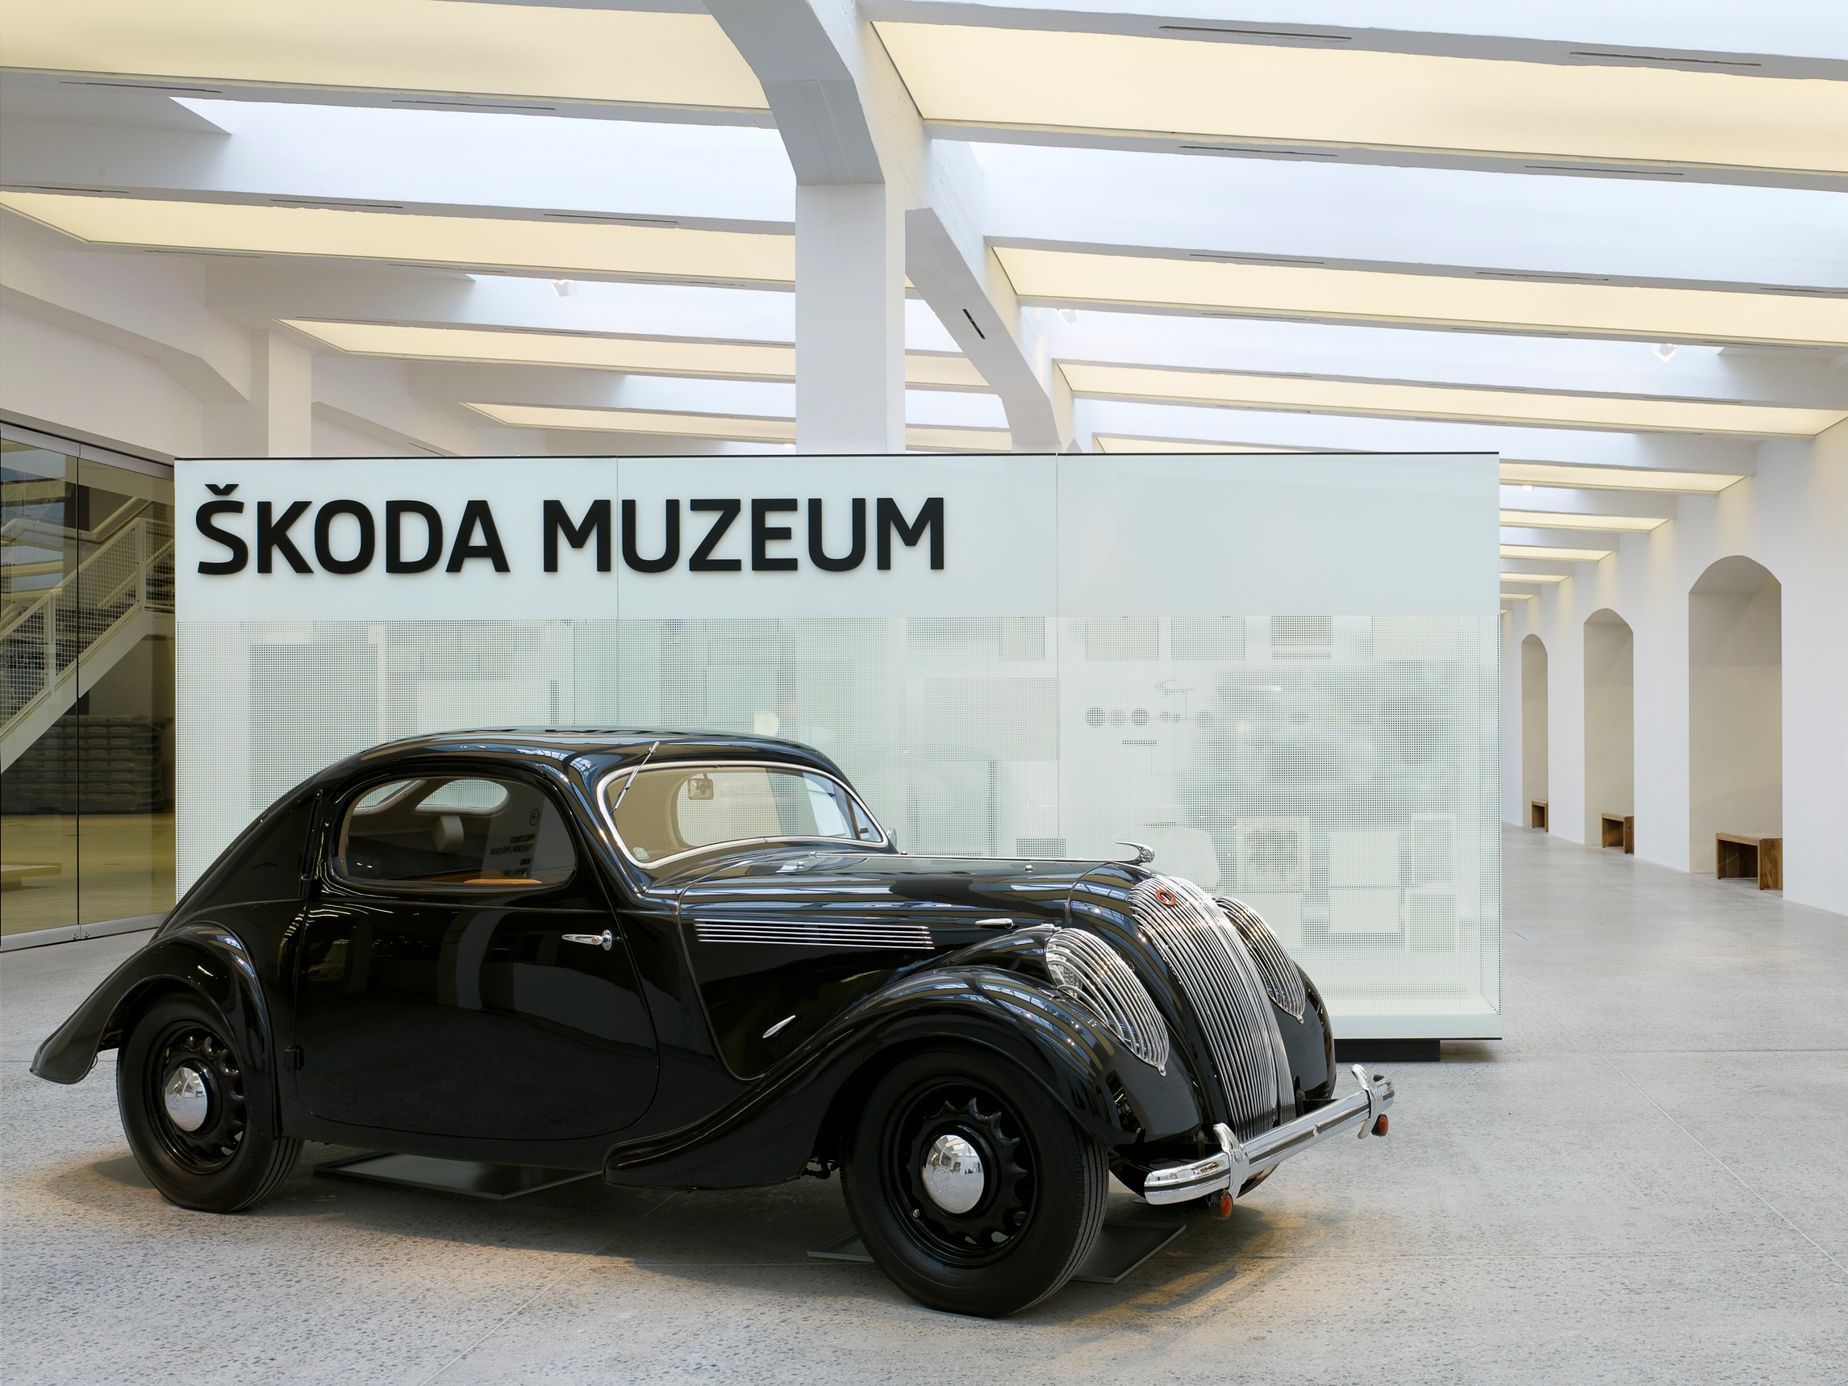 Škoda Muzeum